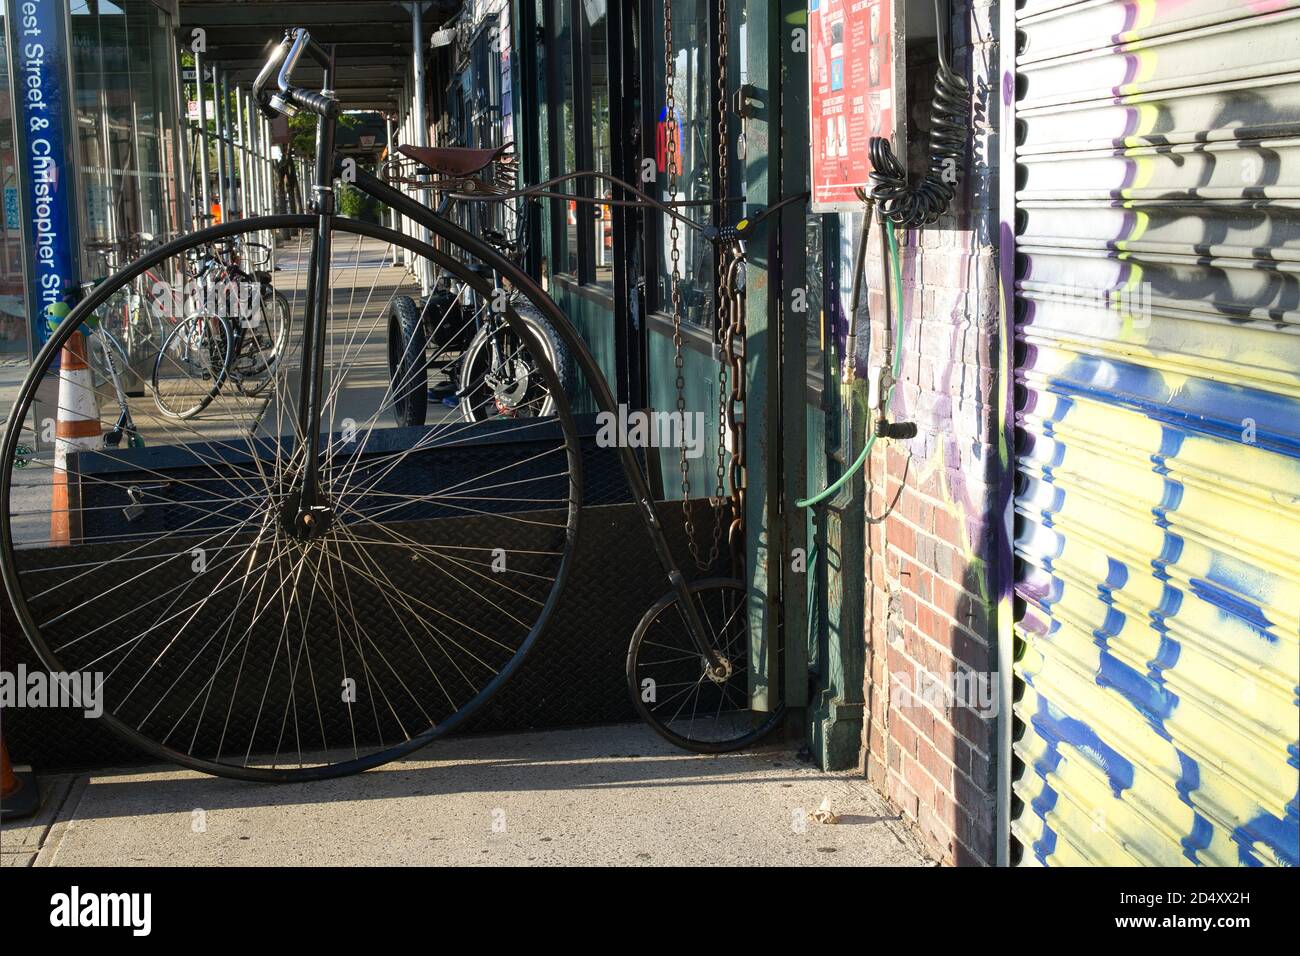 Antikes Fahrrad mit hohem Rad in einer Straße in Manhattan, an einen Fahrradladen angeschlossen Stockfoto